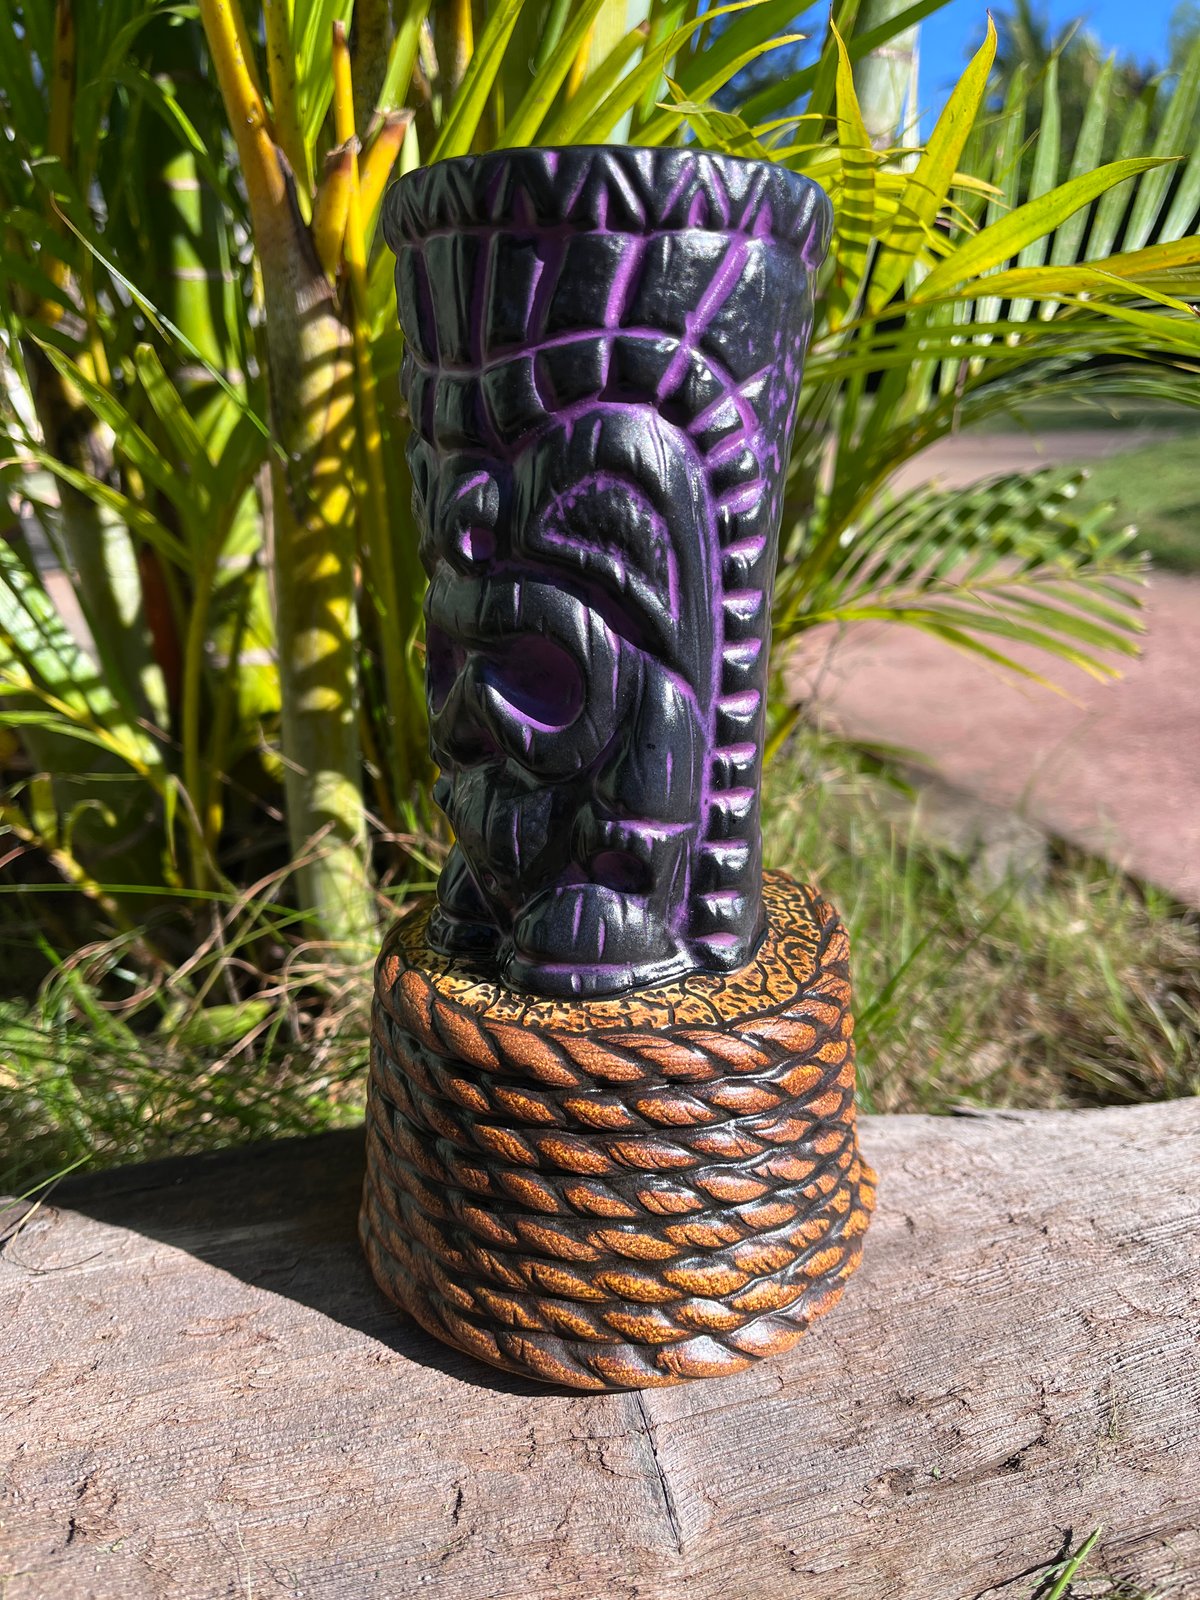 Image of Nauti-Ku Purple Satin Tiki Mug